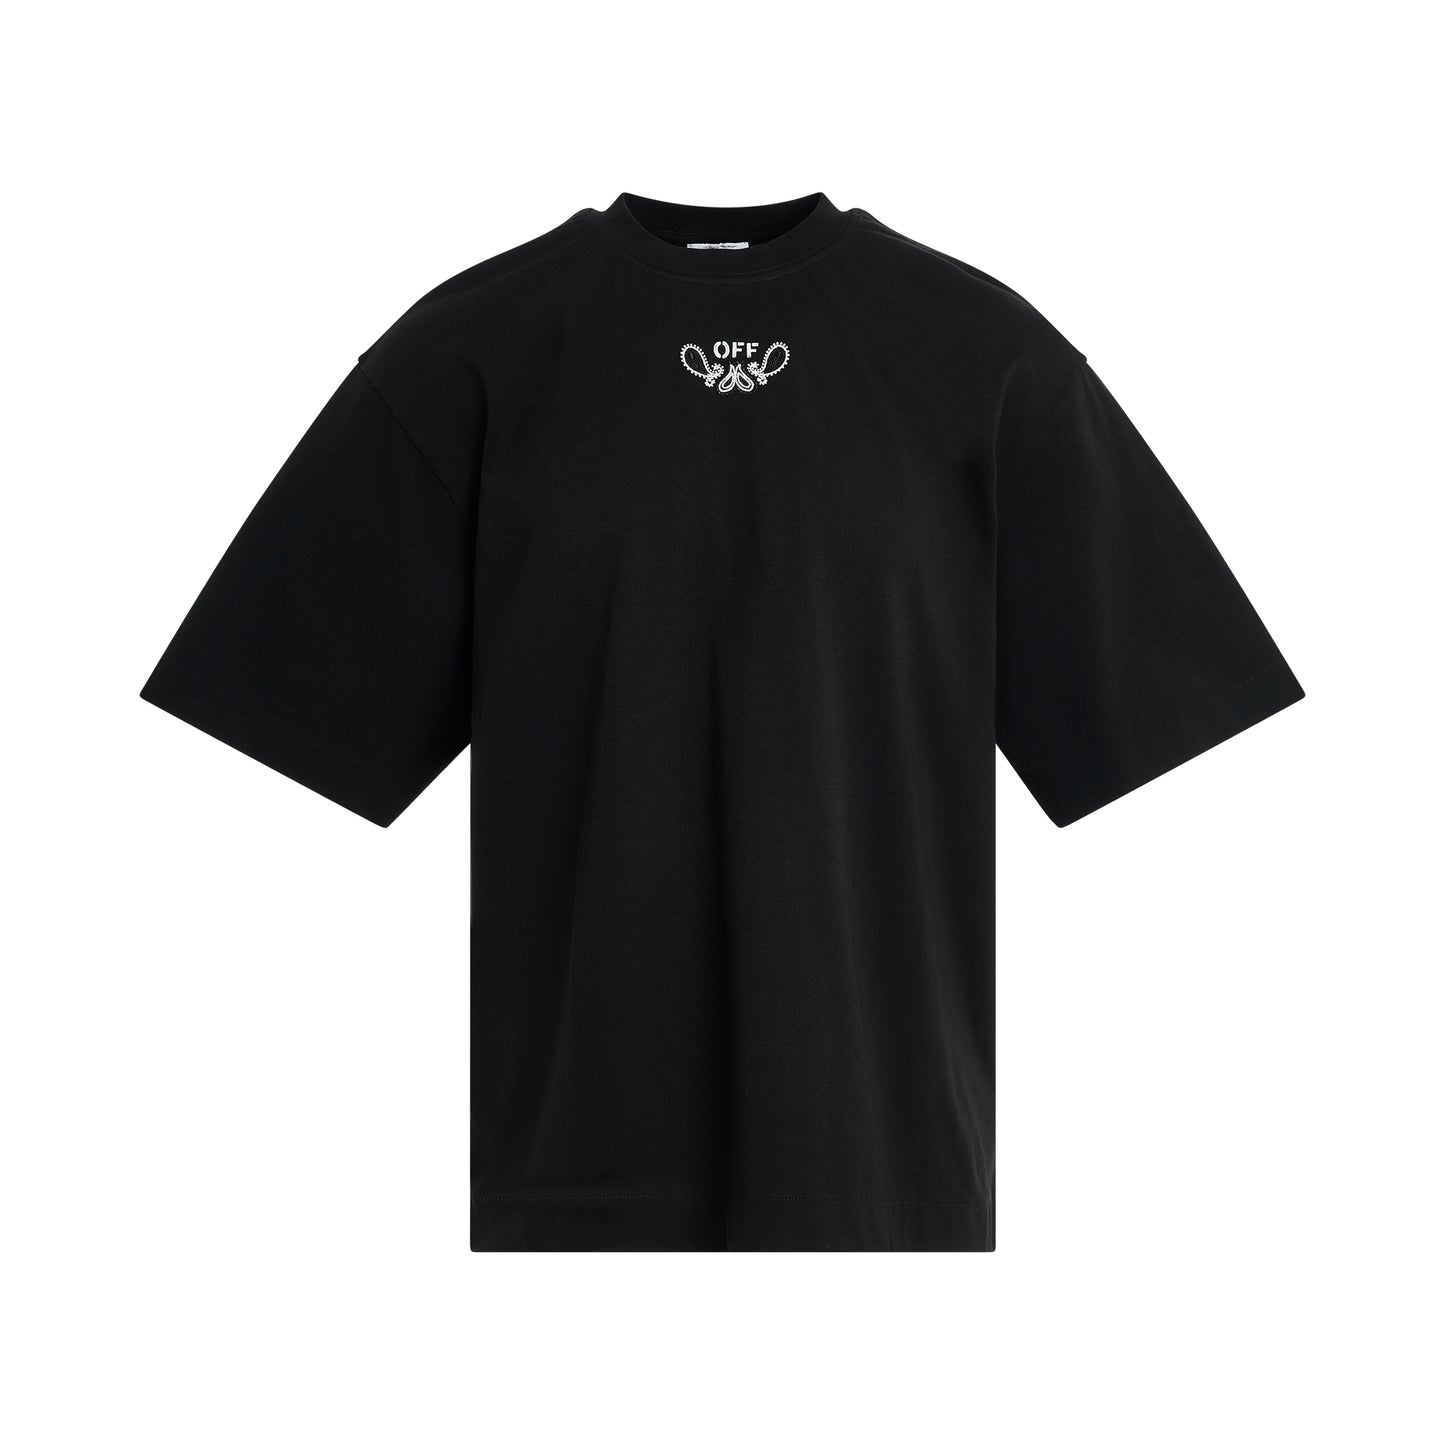 Bandana Arrow Skate T-Shirt in Black/White